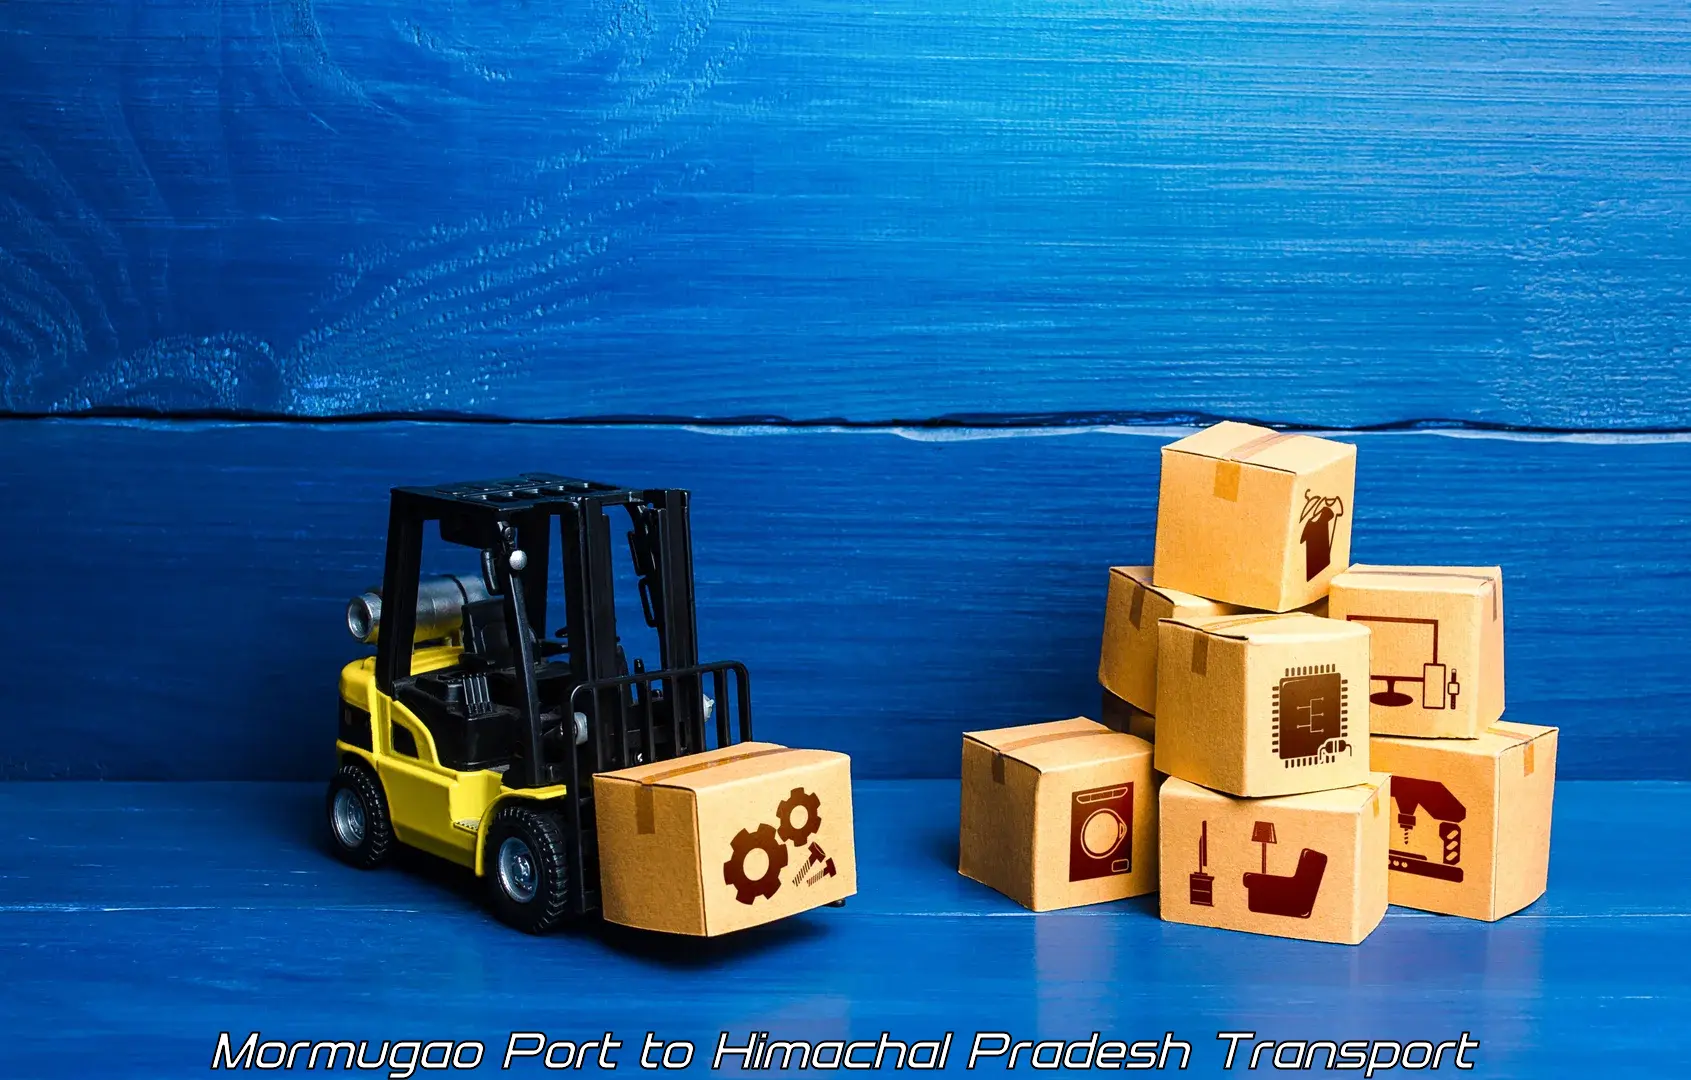 Cargo transport services Mormugao Port to Bharari